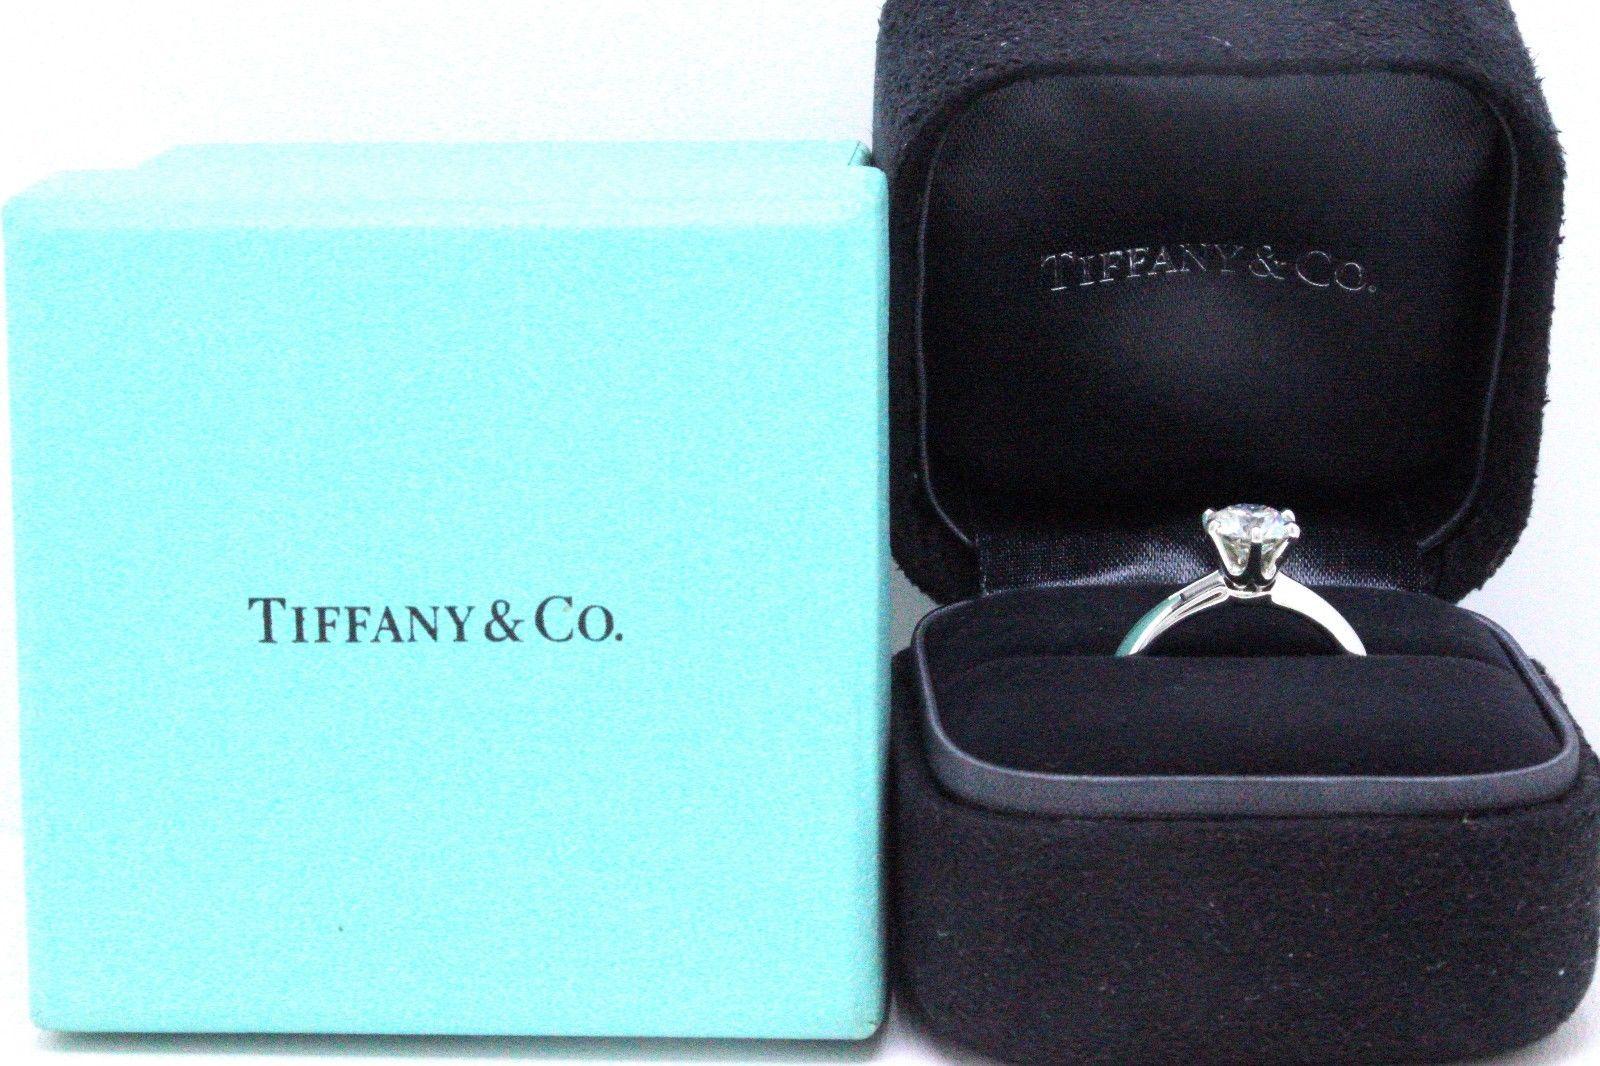 Tiffany & Co.

Stil:  Solitär Diamant Verlobungsring
Seriennummer:  G11140039 / 21487848
Metall:  Platin PT 950
Größe:  5.5 - Ansehnlich
Karat Gesamtgewicht:  1.07 CTS
Diamant-Form:  Rund Brillant
Farbe und Reinheit des Diamanten:  F /